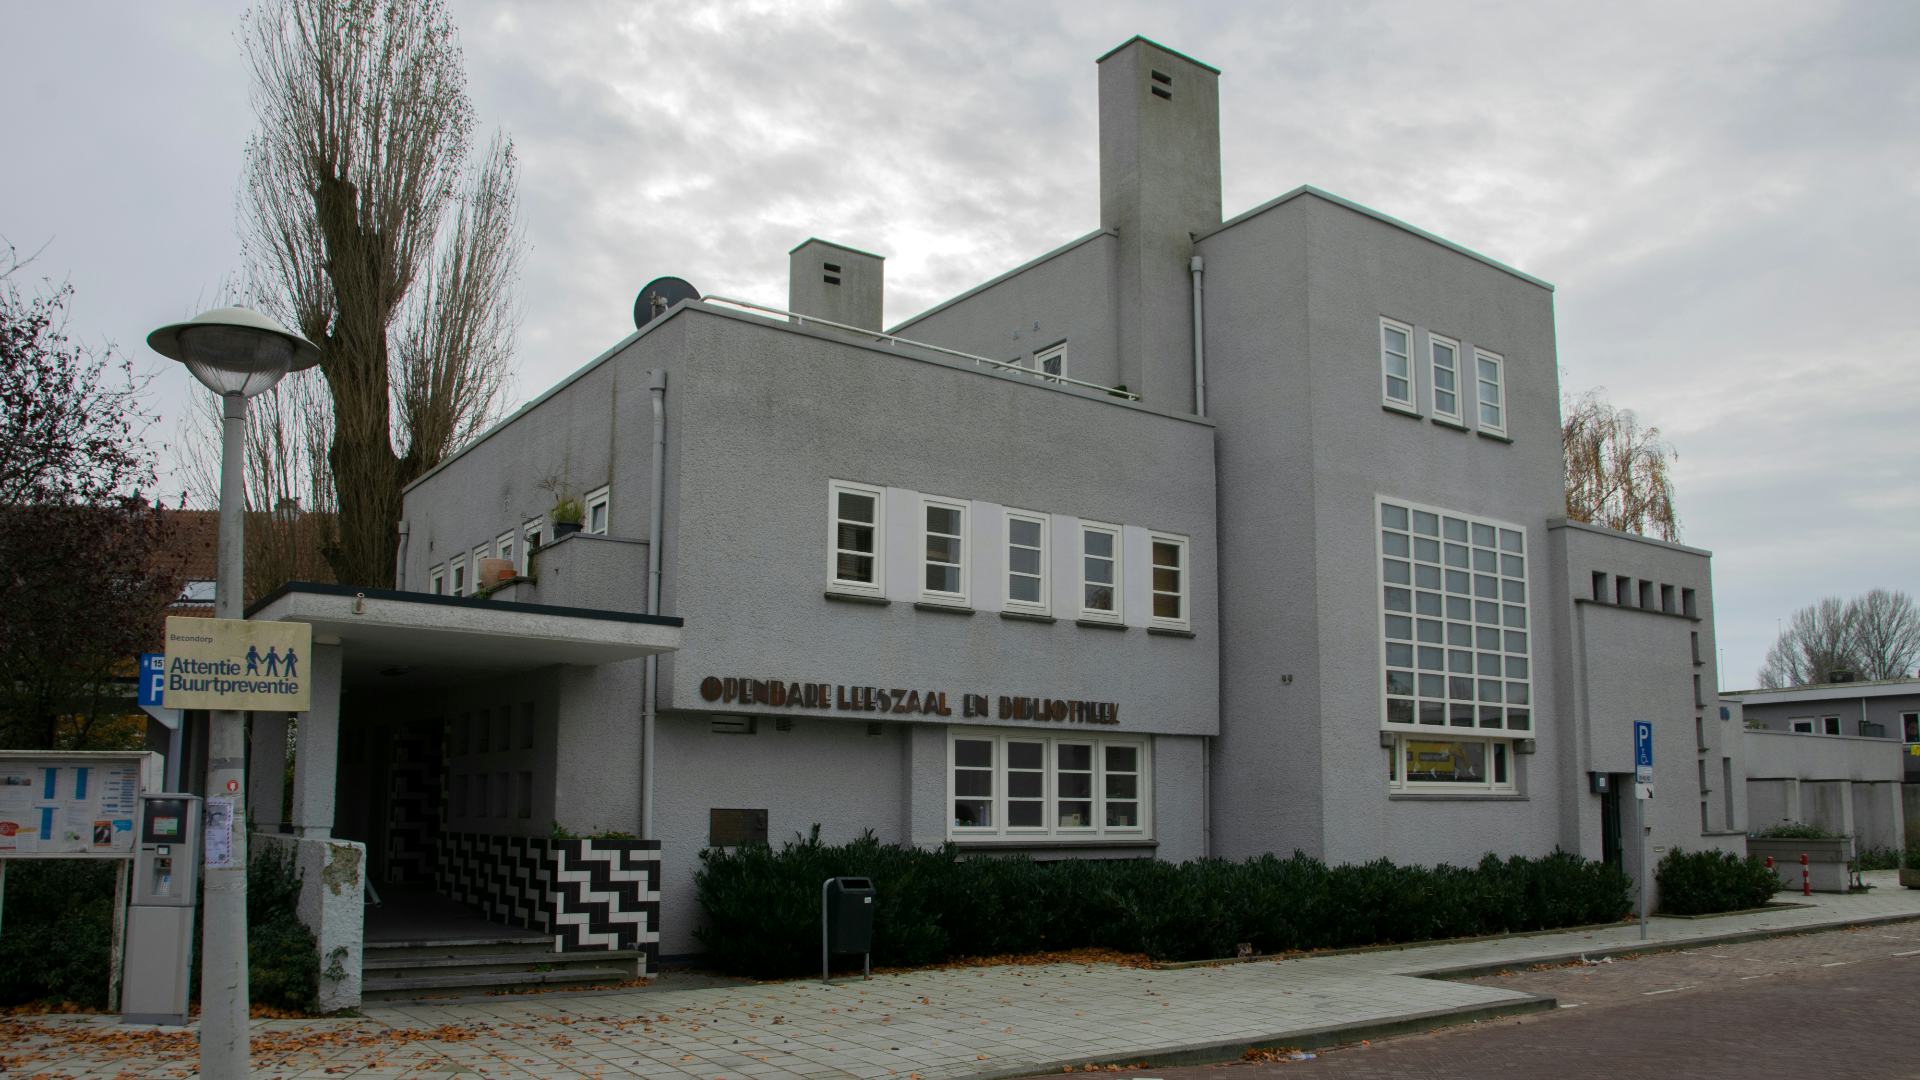 Bibliotheekgebouw Betondorp. Beeld Shutterstock